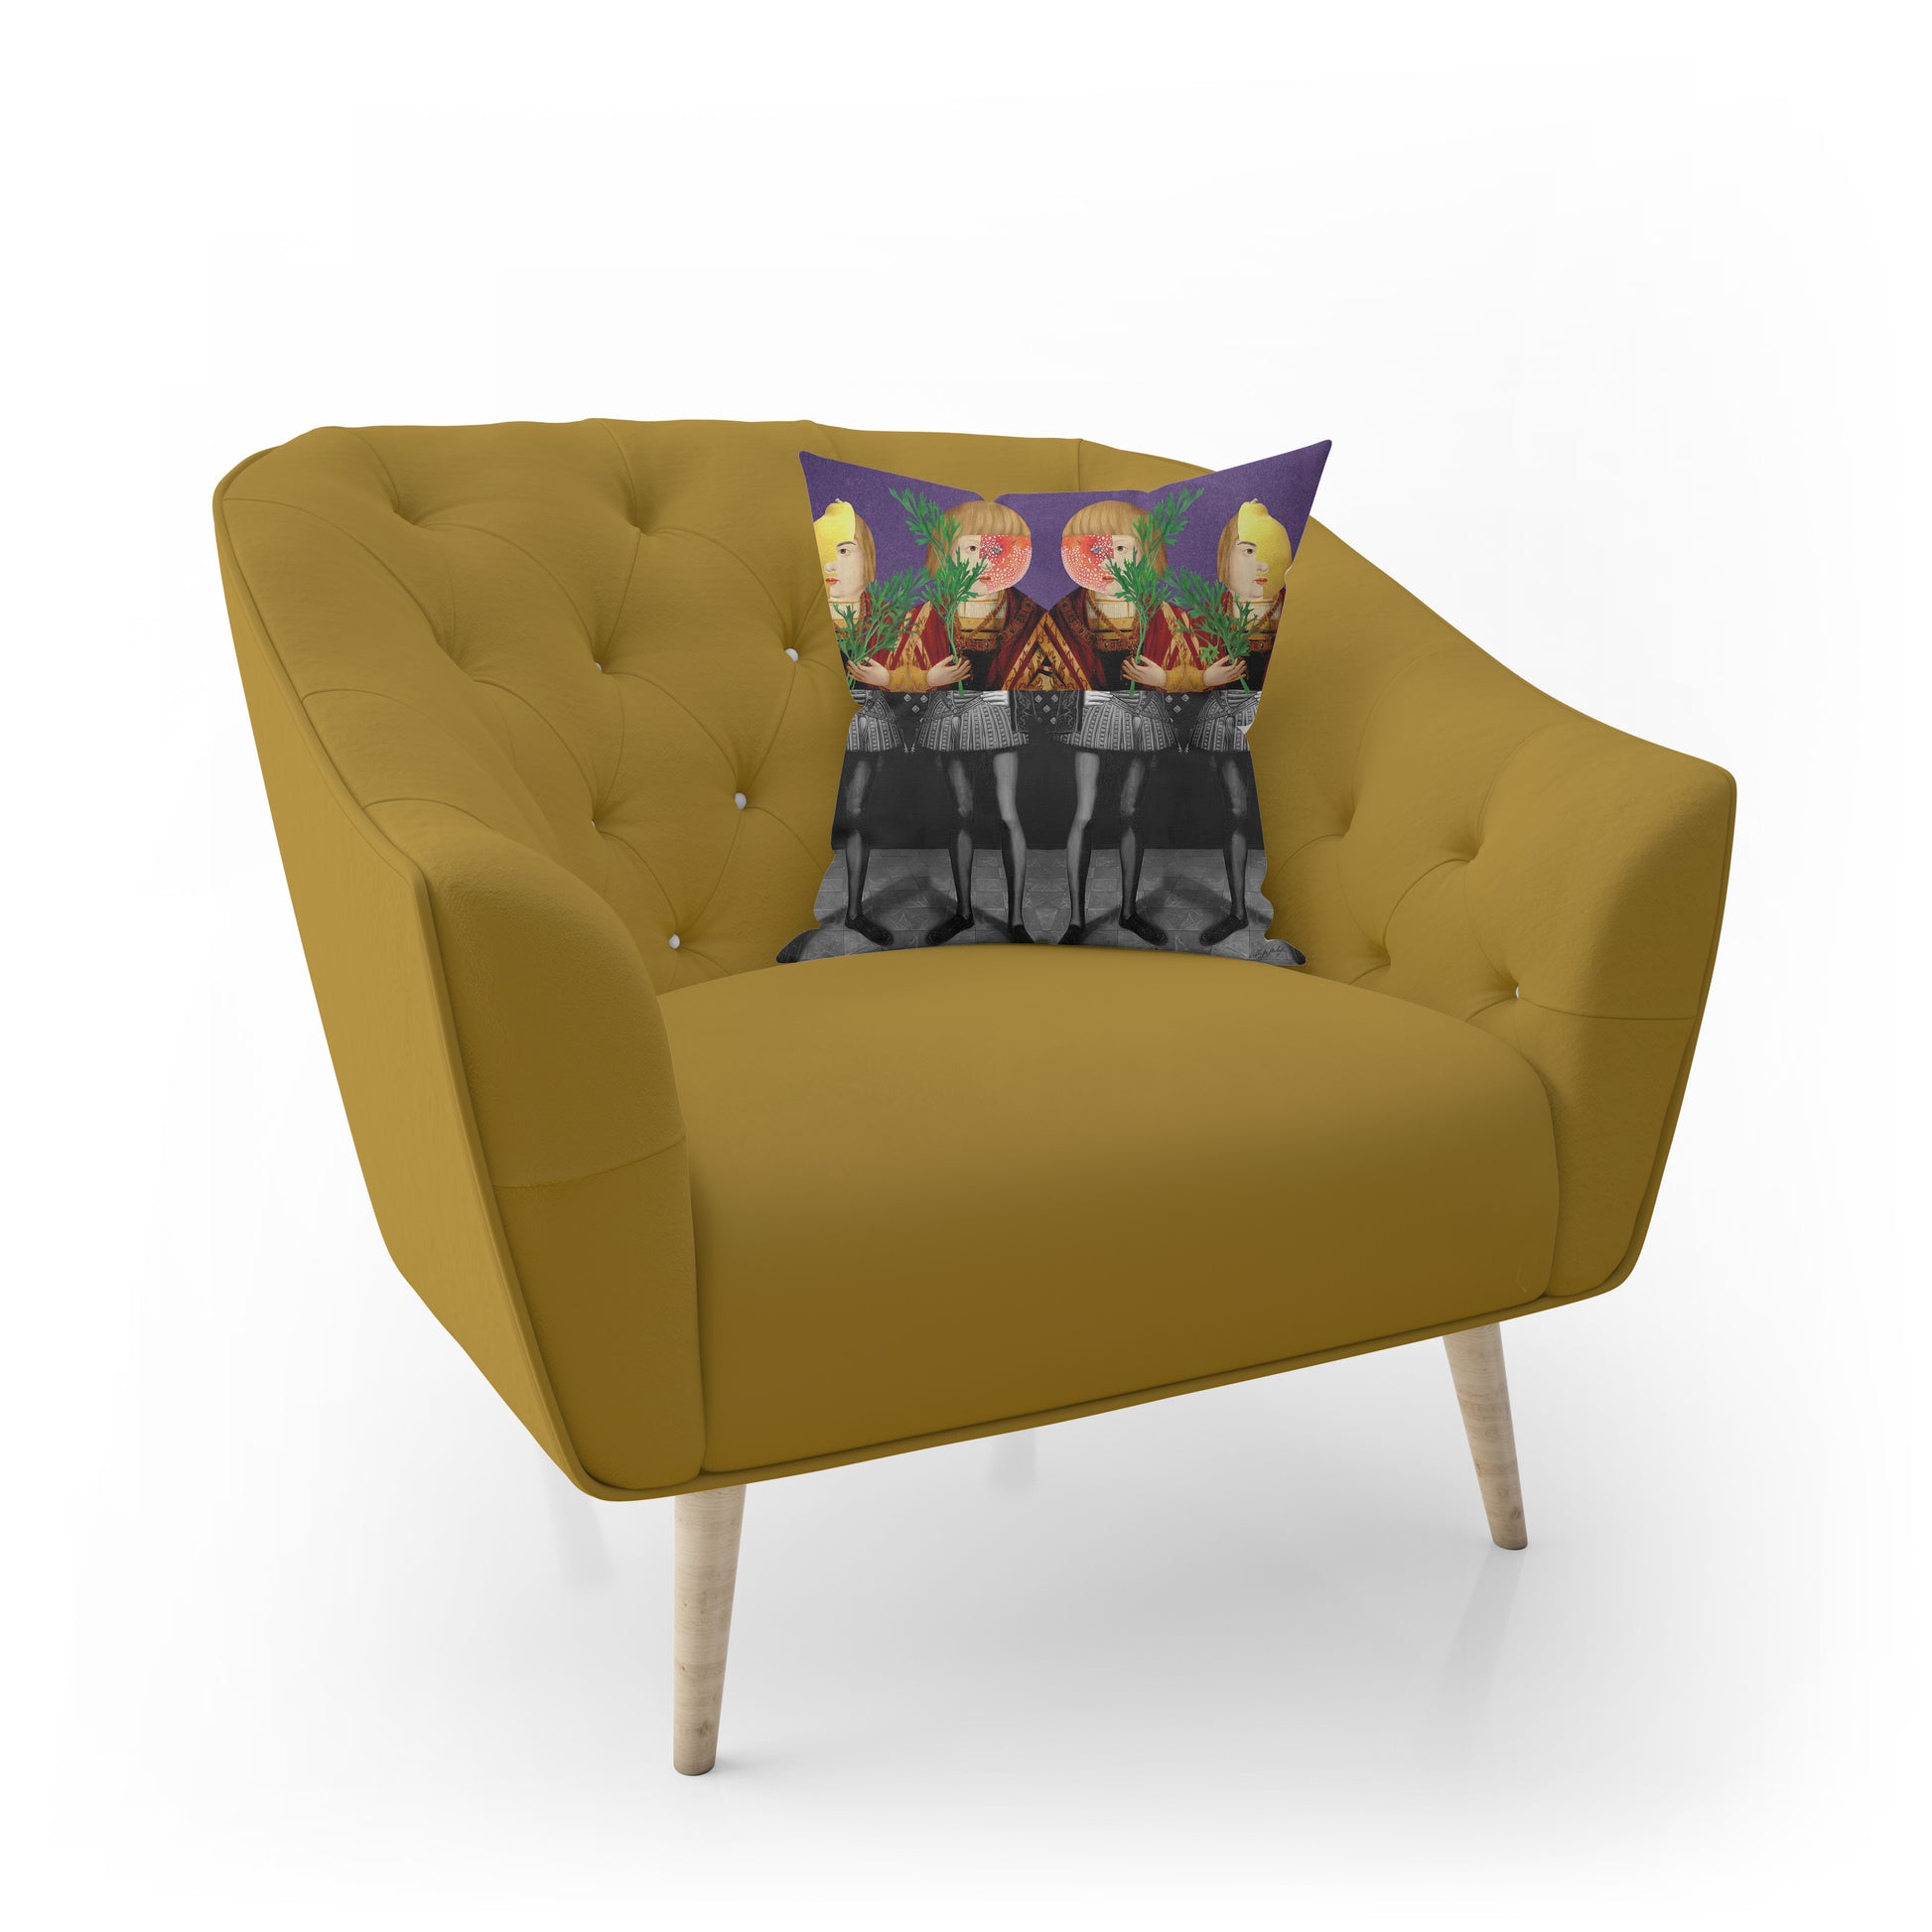 Coussin en velours avec un motif, sur un fauteuil capitonné d'une inspiration année 70 de couleur jaune pale.